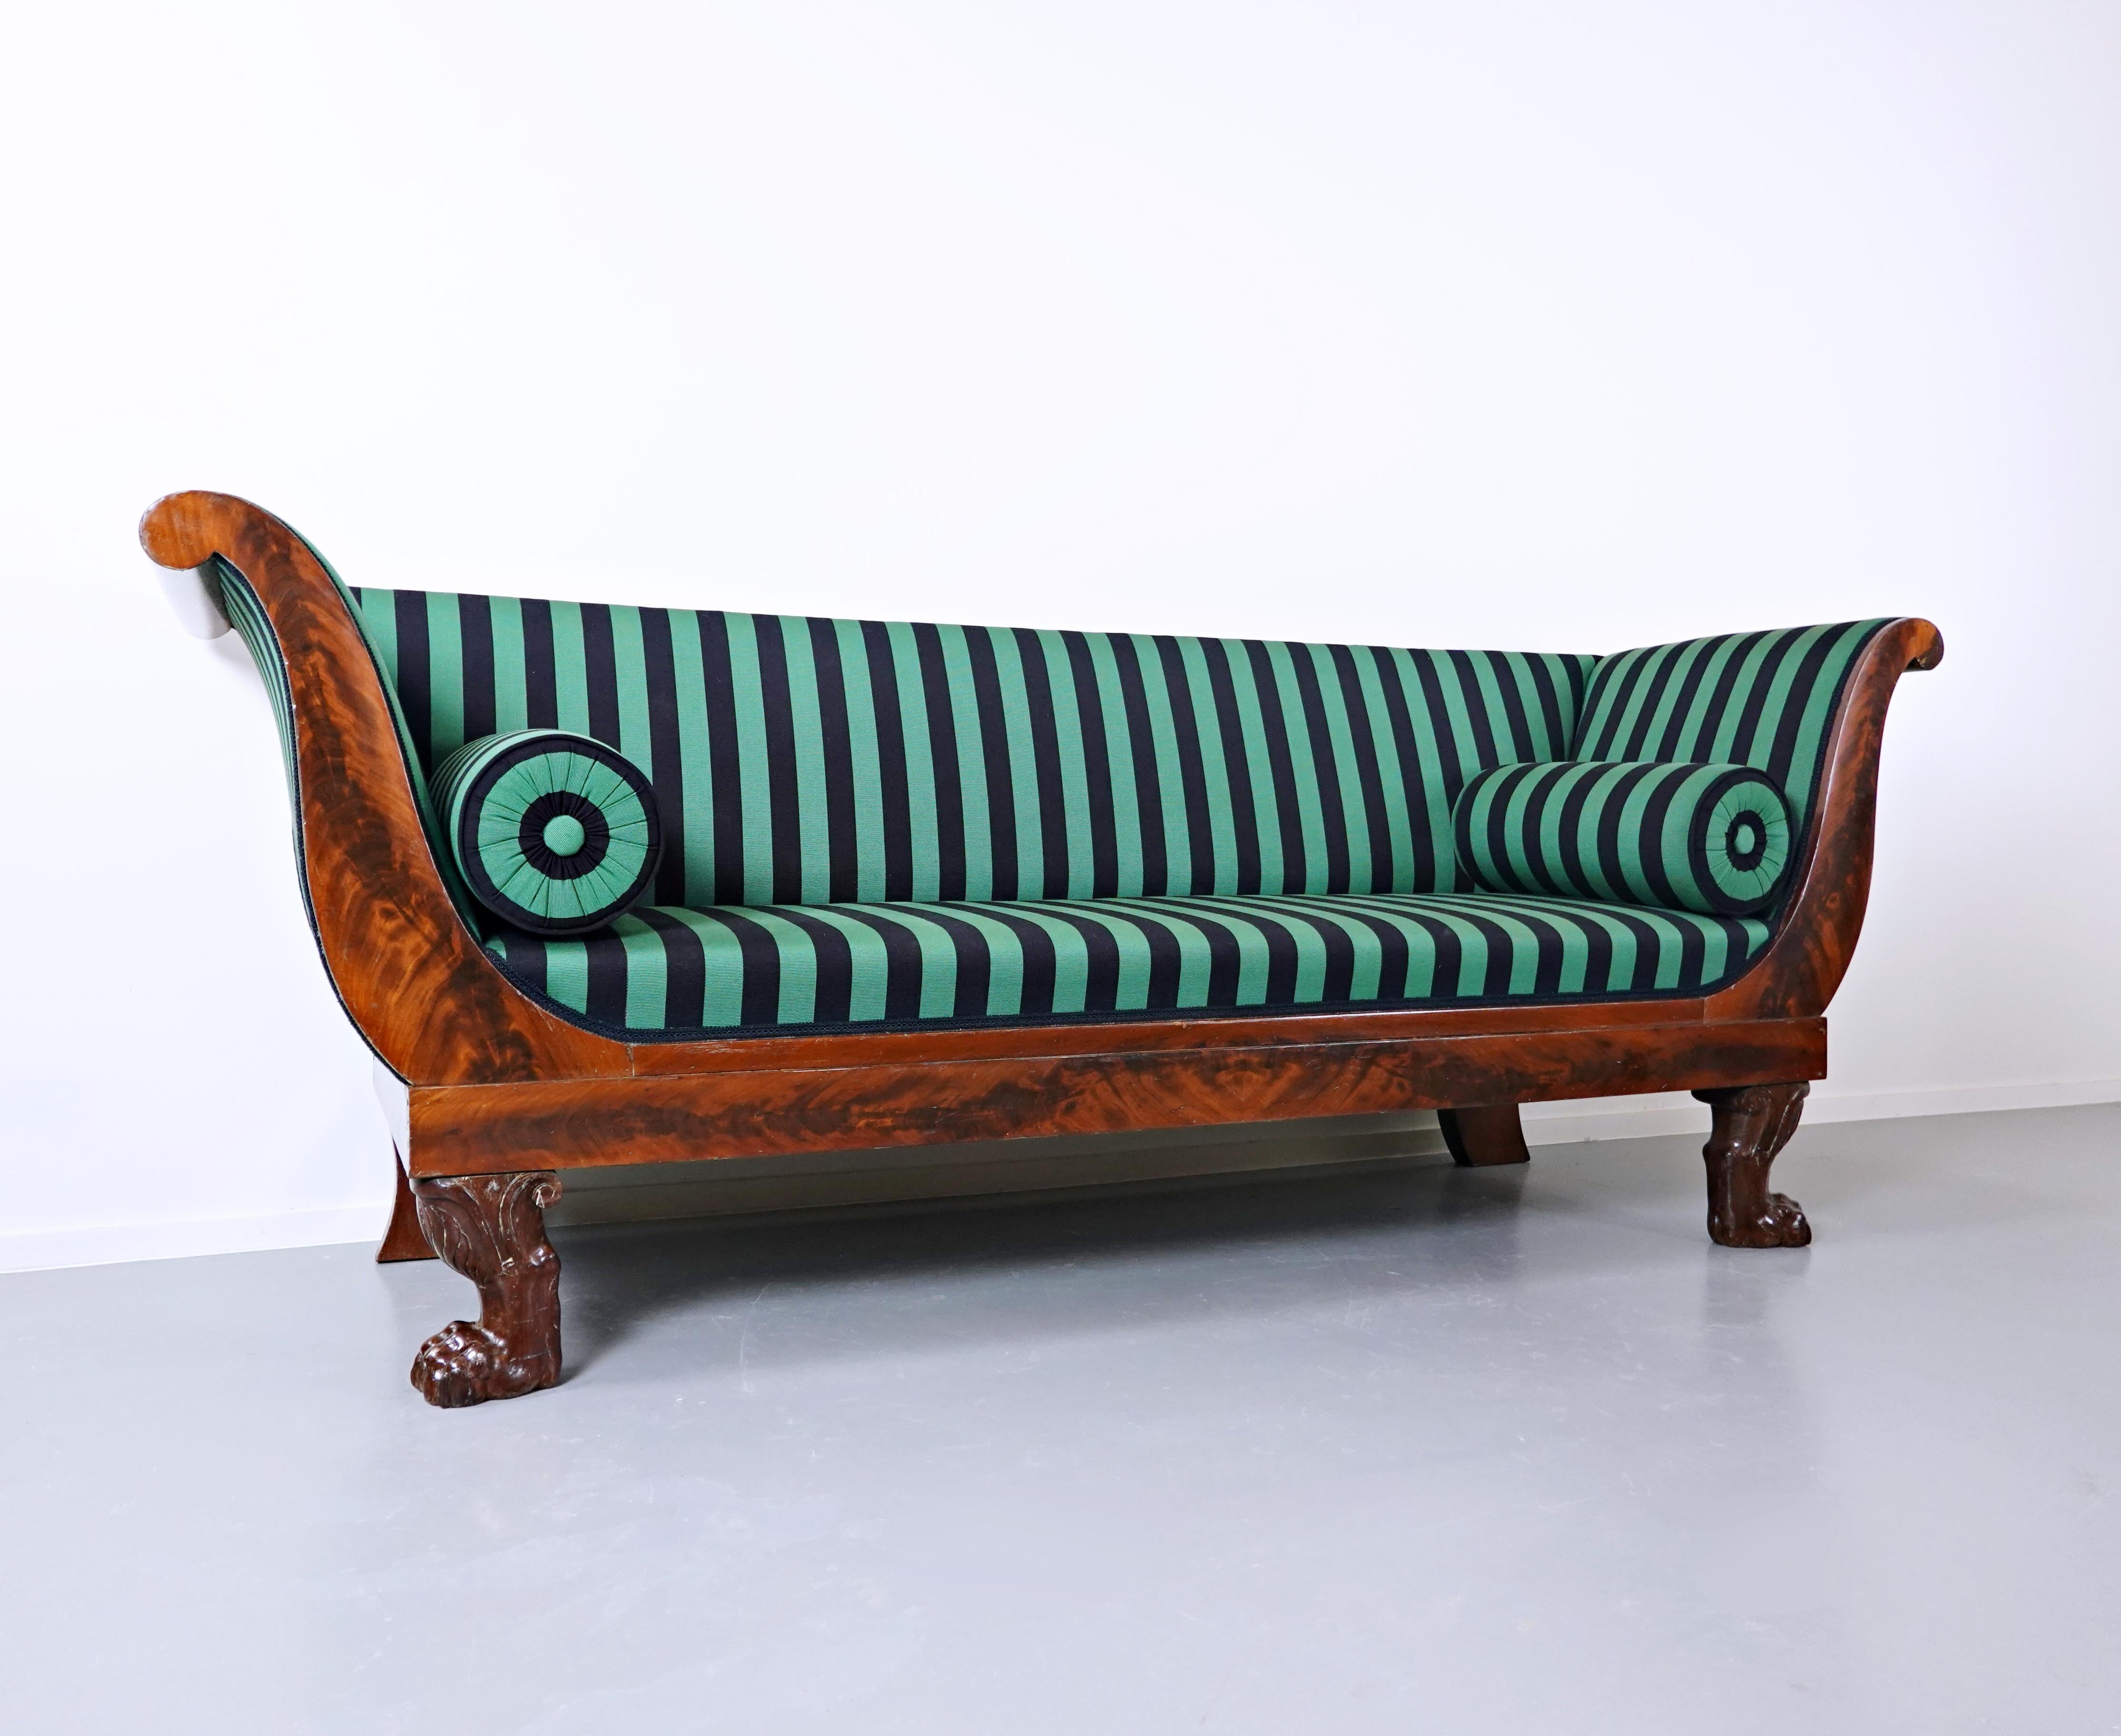 French Empire sofa, mahogany, circa 1810.